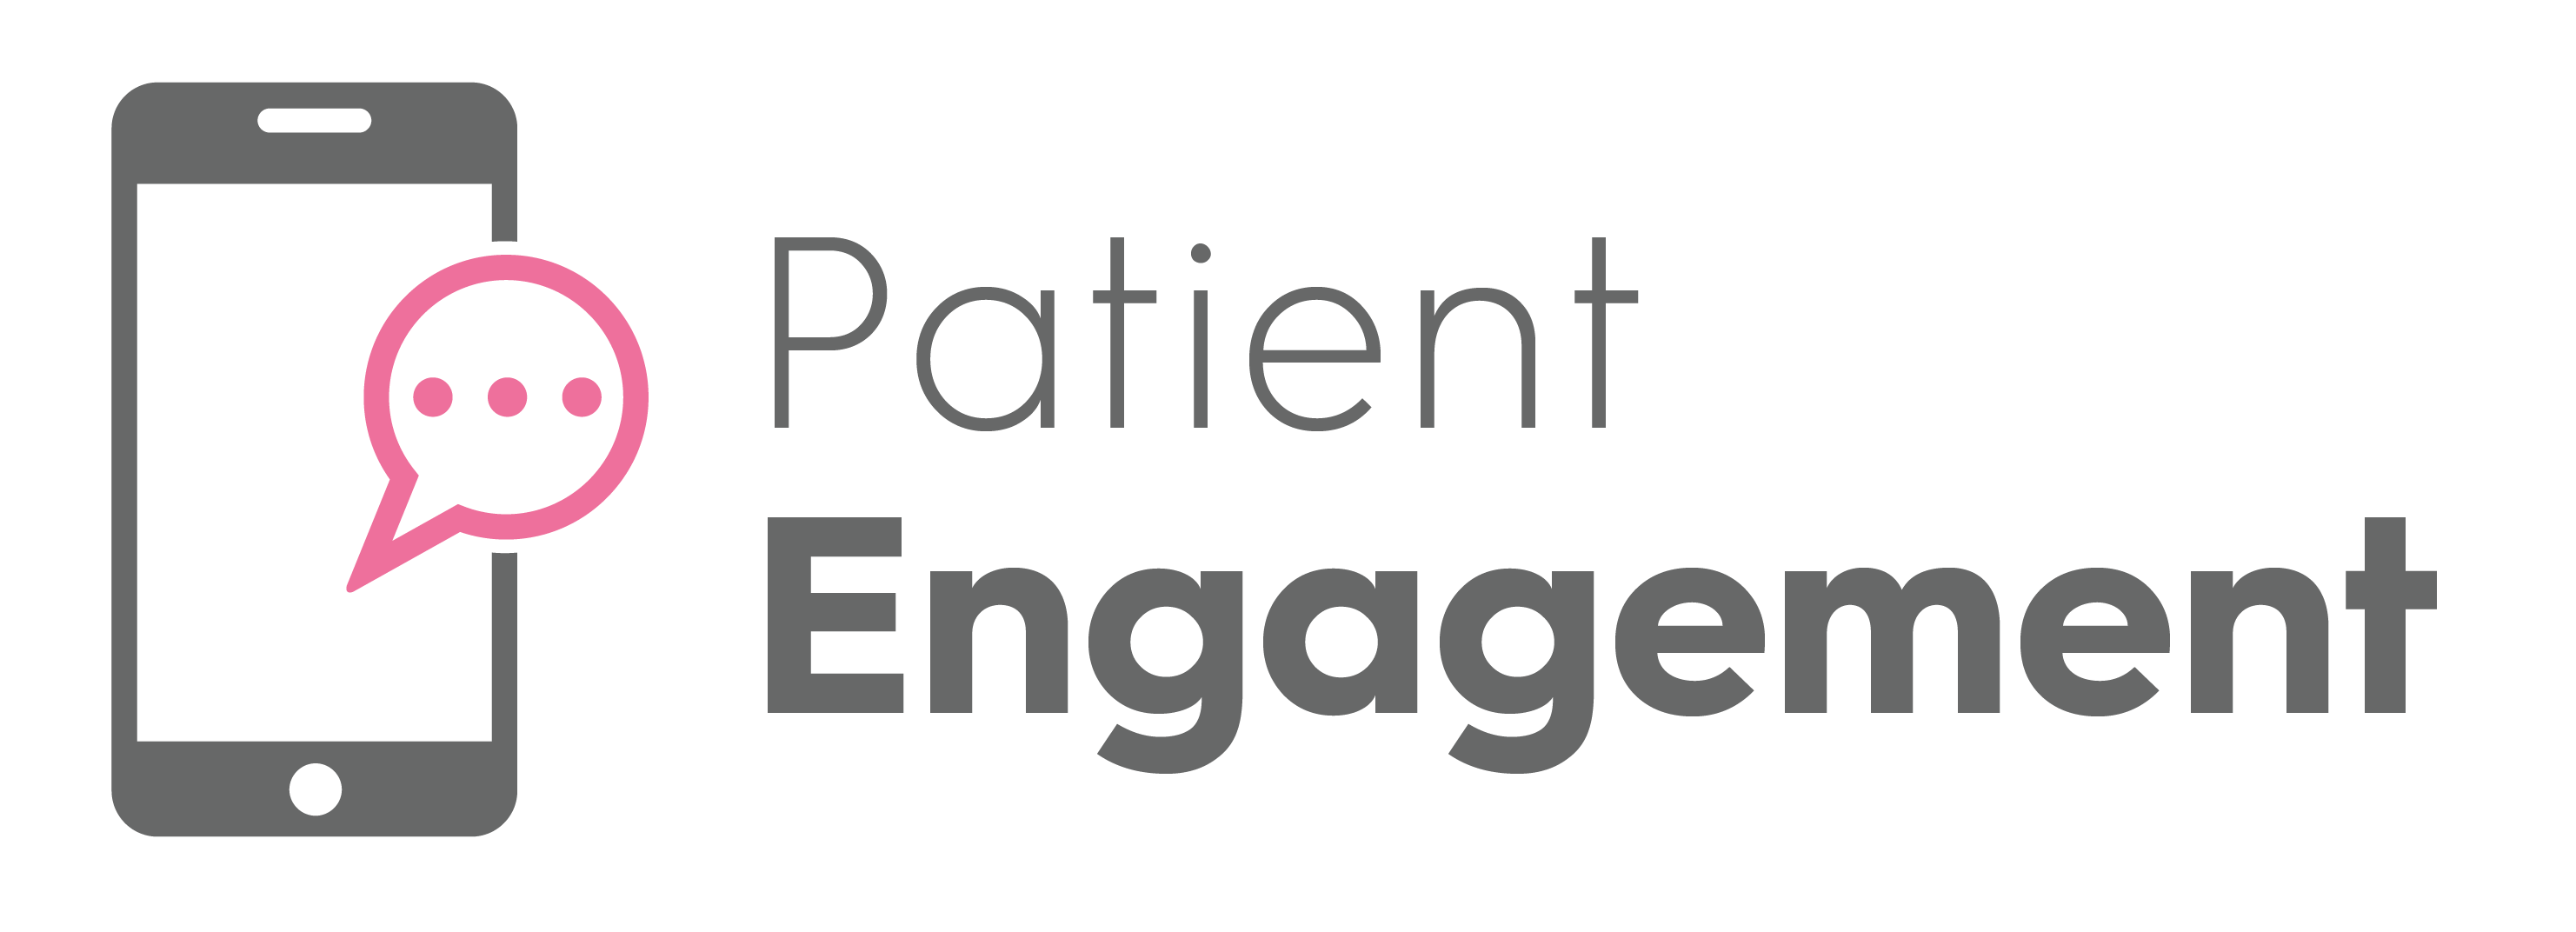 CHS_Patient engagement logo